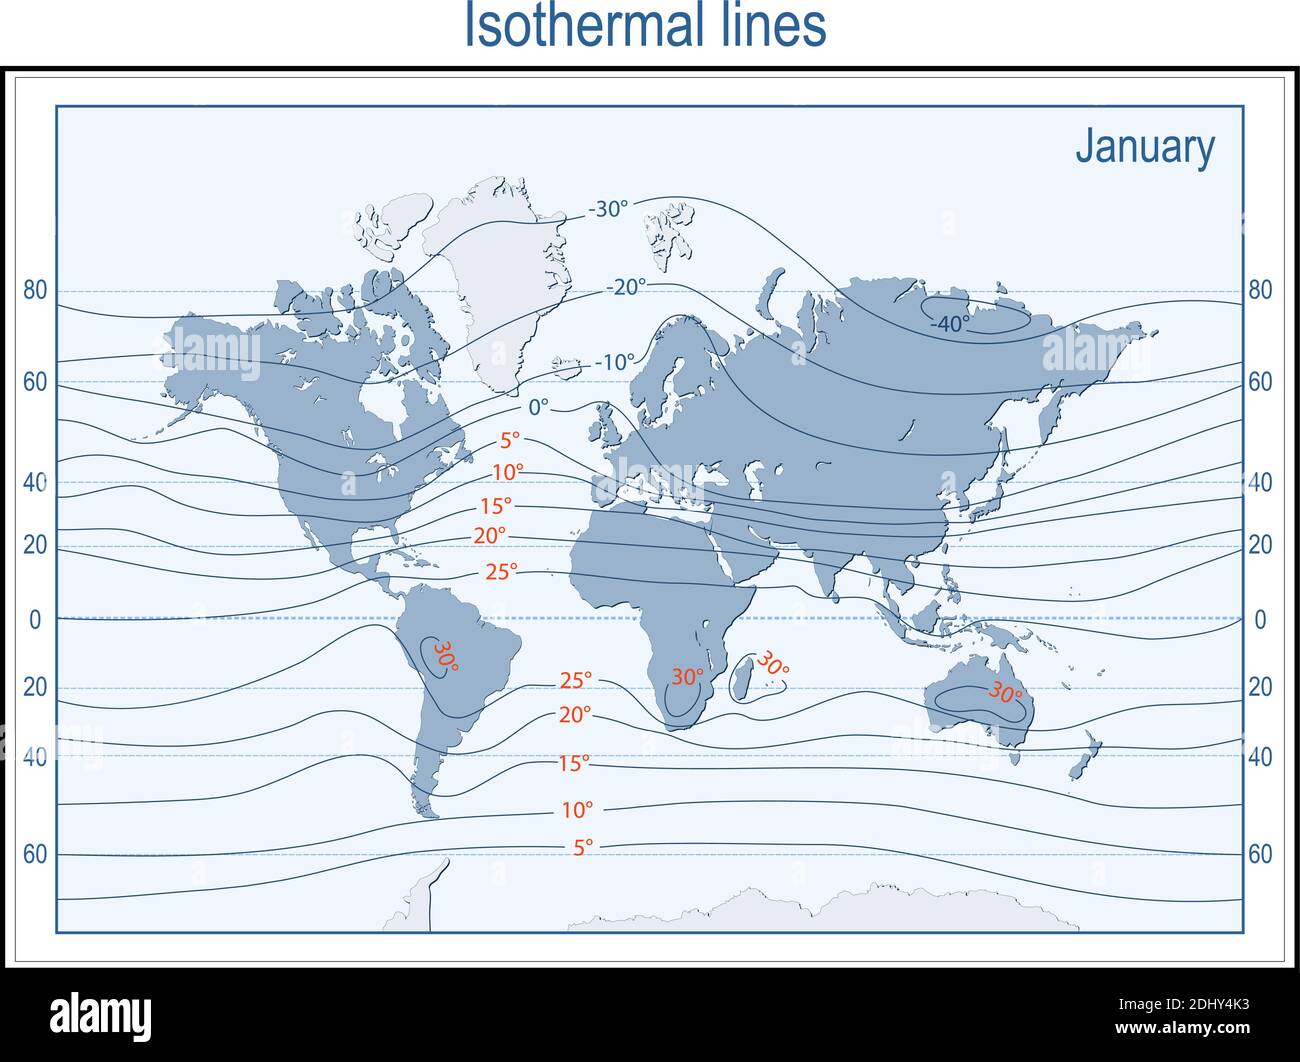 Isoterma. Mappa del mondo con continenti, linee isotermiche e zone di temperatura fisica in gennaio in gradi Celsius. Vettore Illustrazione Vettoriale